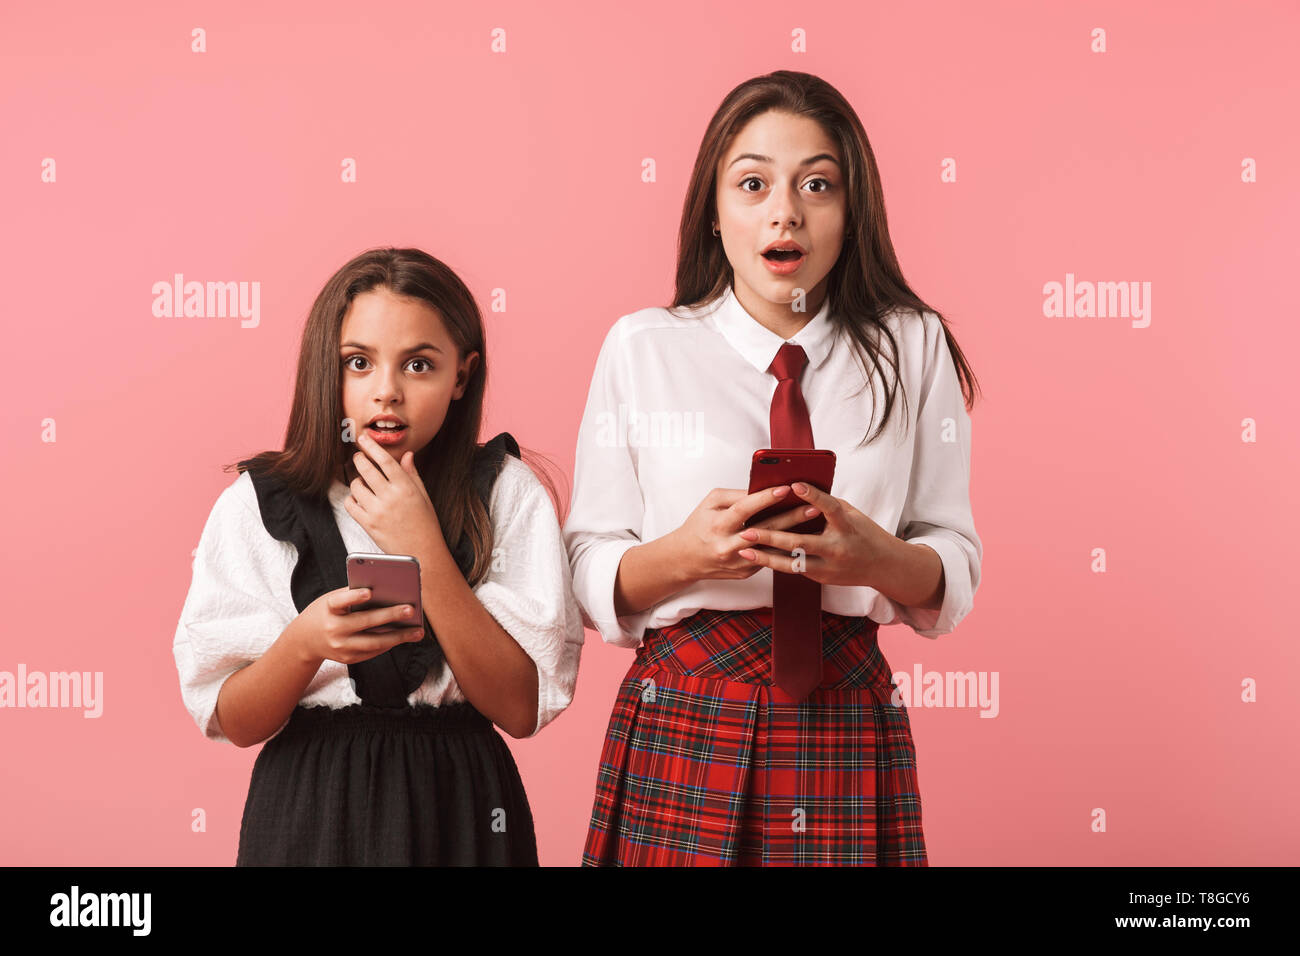 Ritratto di ragazze positivo in uniforme scolastica utilizzando i telefoni cellulari mentre in piedi isolato su sfondo rosso Foto Stock